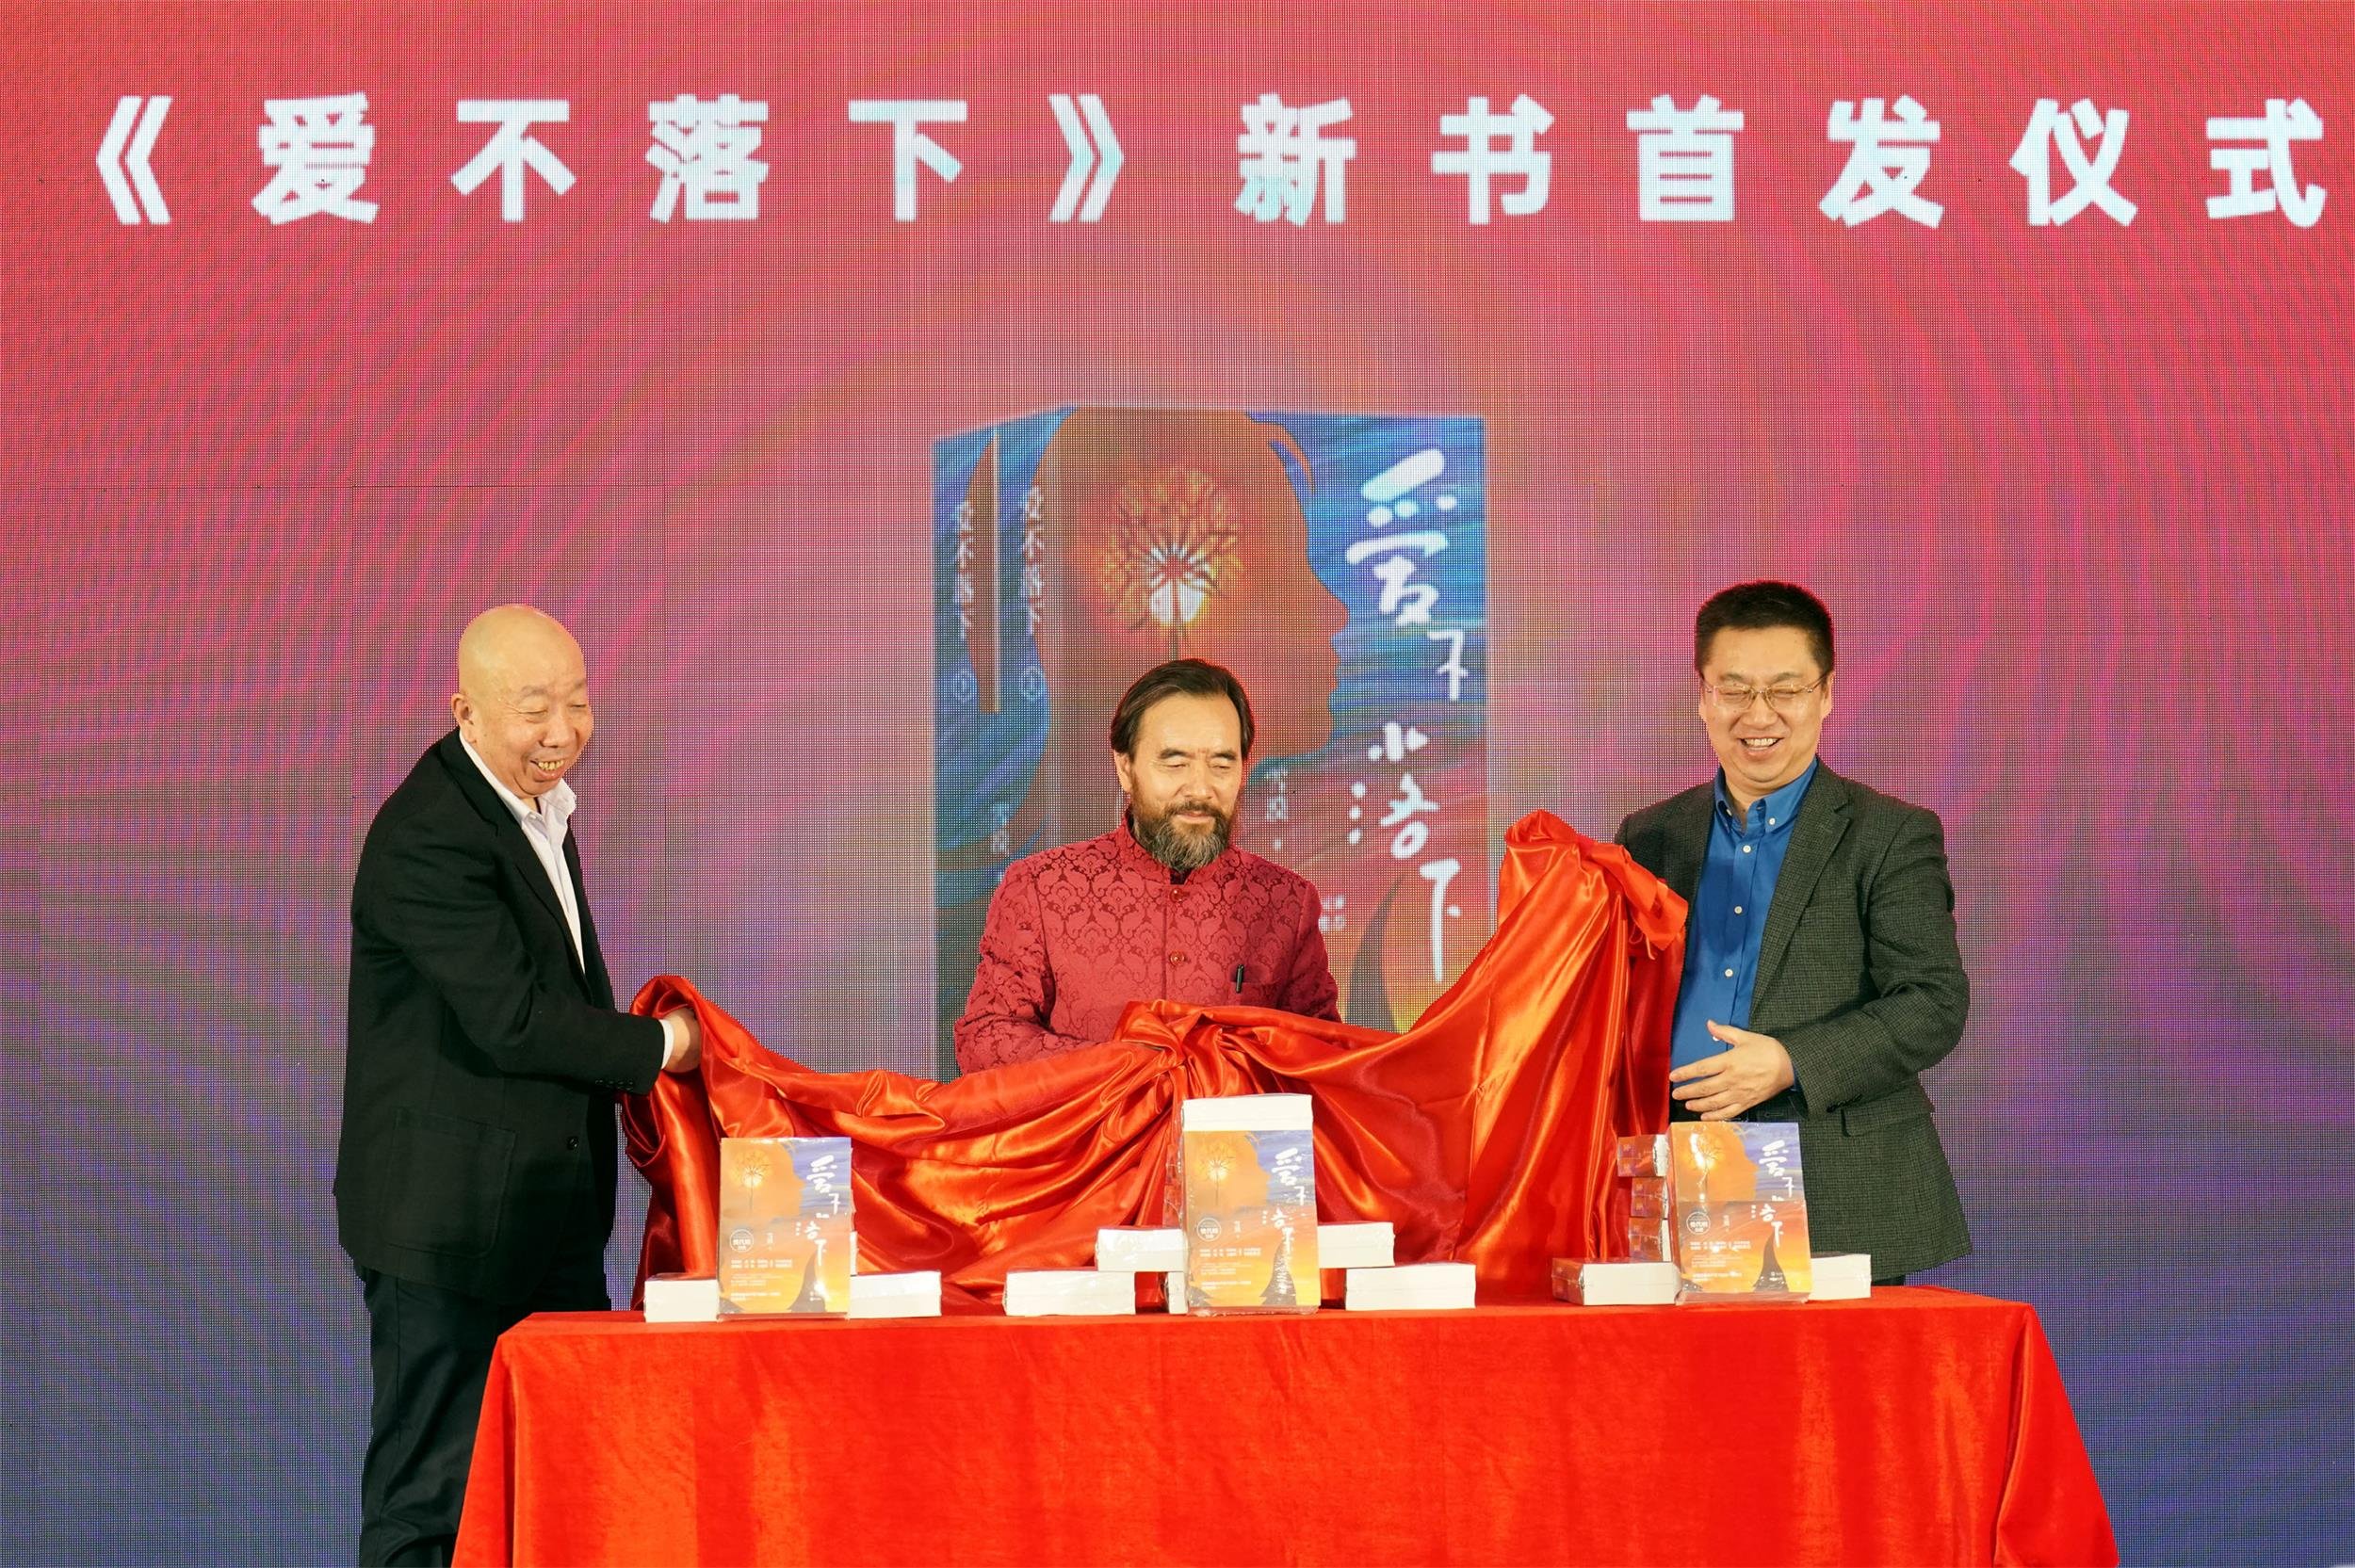 新书《爱不落下》北京图书订货会首发